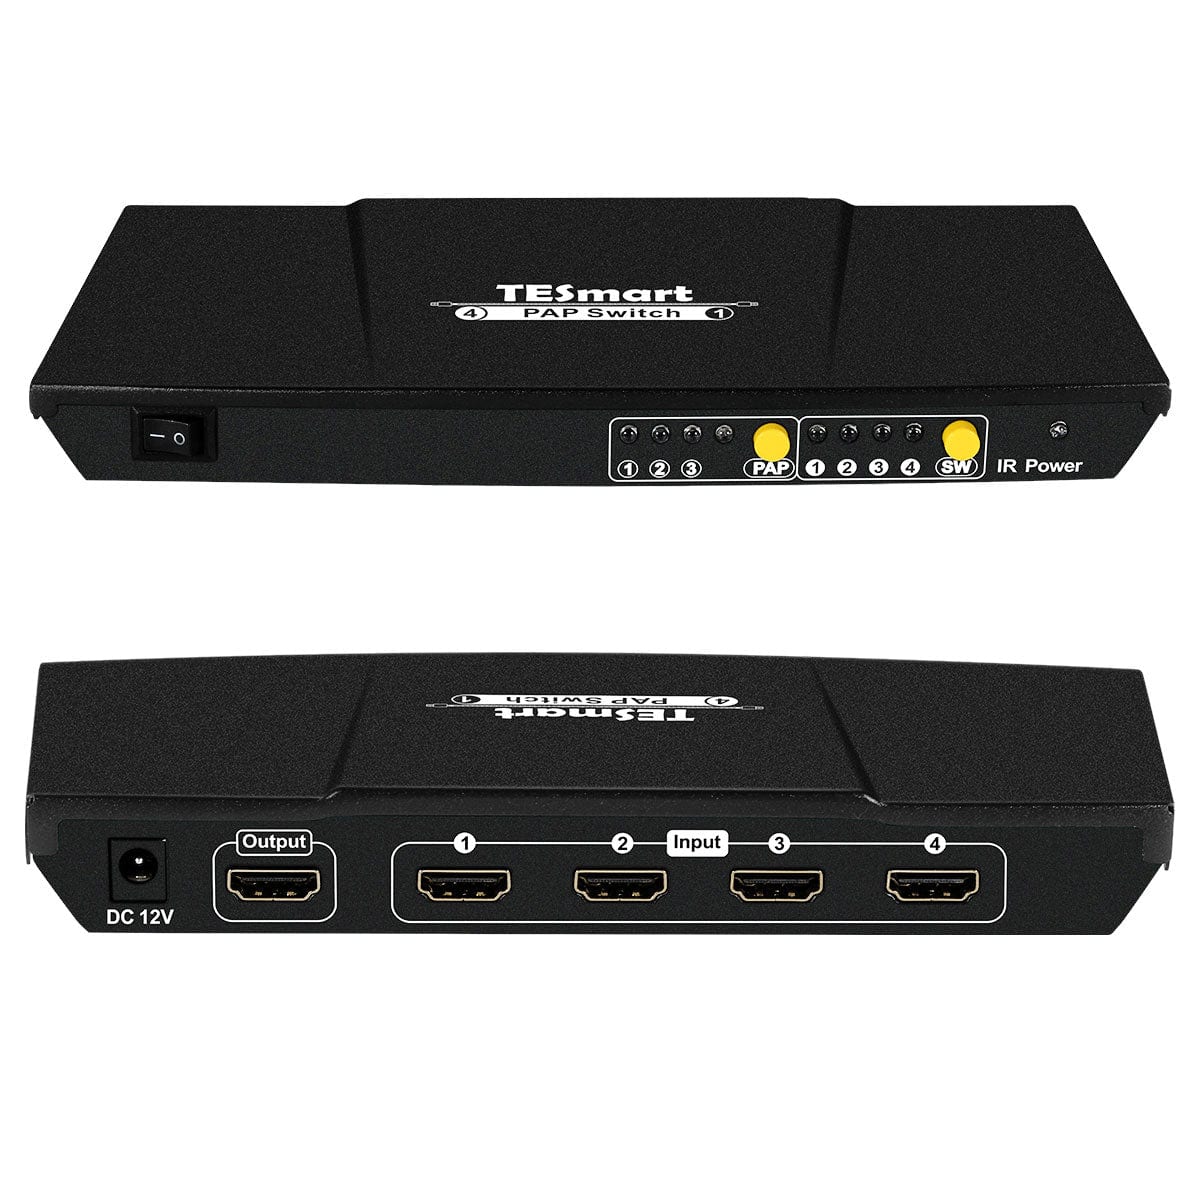 TESmart HSW0401A10-EUBK HDMI Switch 4 Port HDMI Switch 1080P@60Hz Multi Viewer und nahtloses Umschalten 4 in 1 Out Seamless HDMI Switch，Multi-View1080p@60Hz，IR-Fernbedienung EU Plug / Black